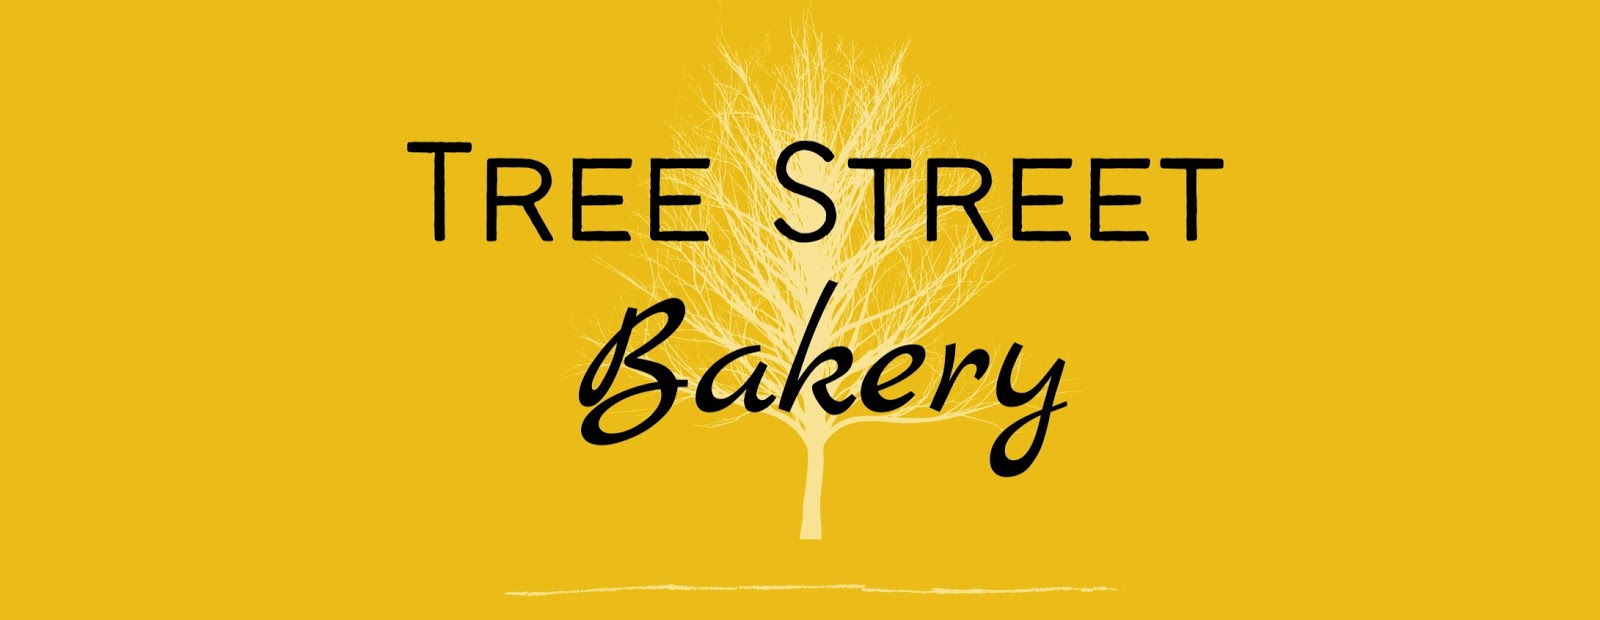 Tree Street Bakery